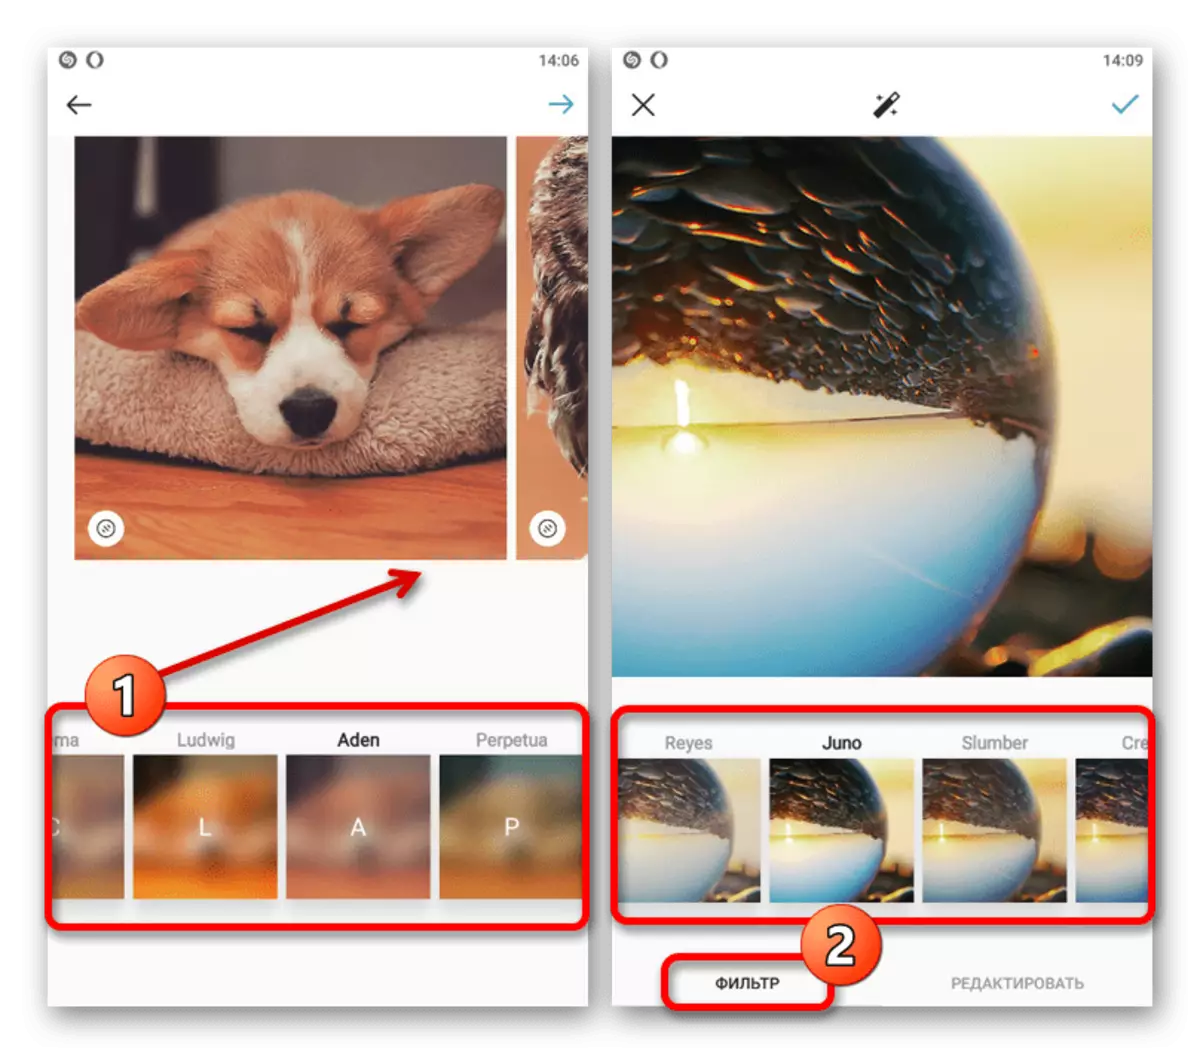 مثال على تطبيق المرشحات إلى ملف في تطبيقات الهاتف المتحرك في Instagram